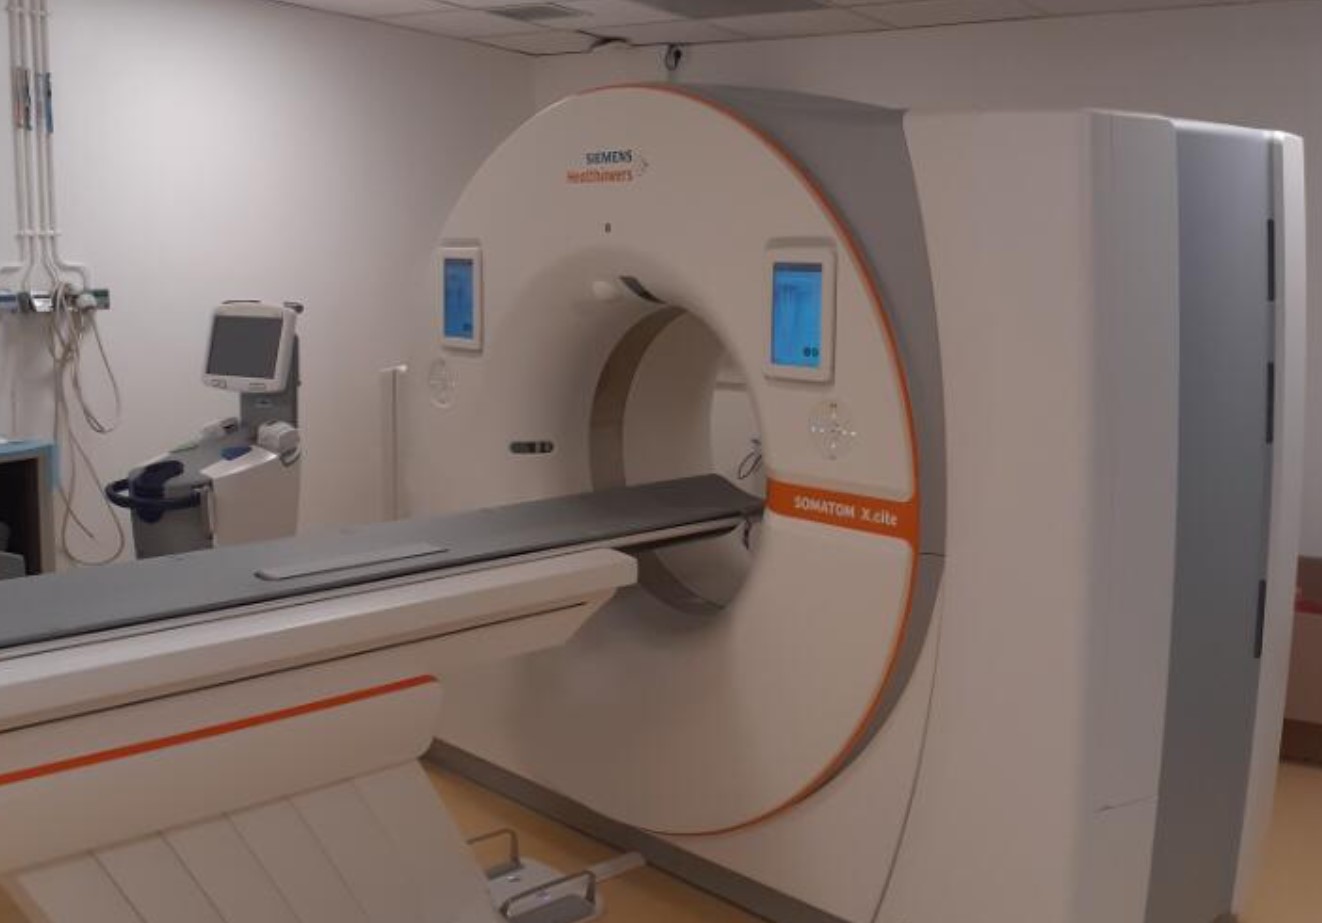     Le Centre Hospitalier de la Basse-Terre dispose d'un nouveau scanner 

